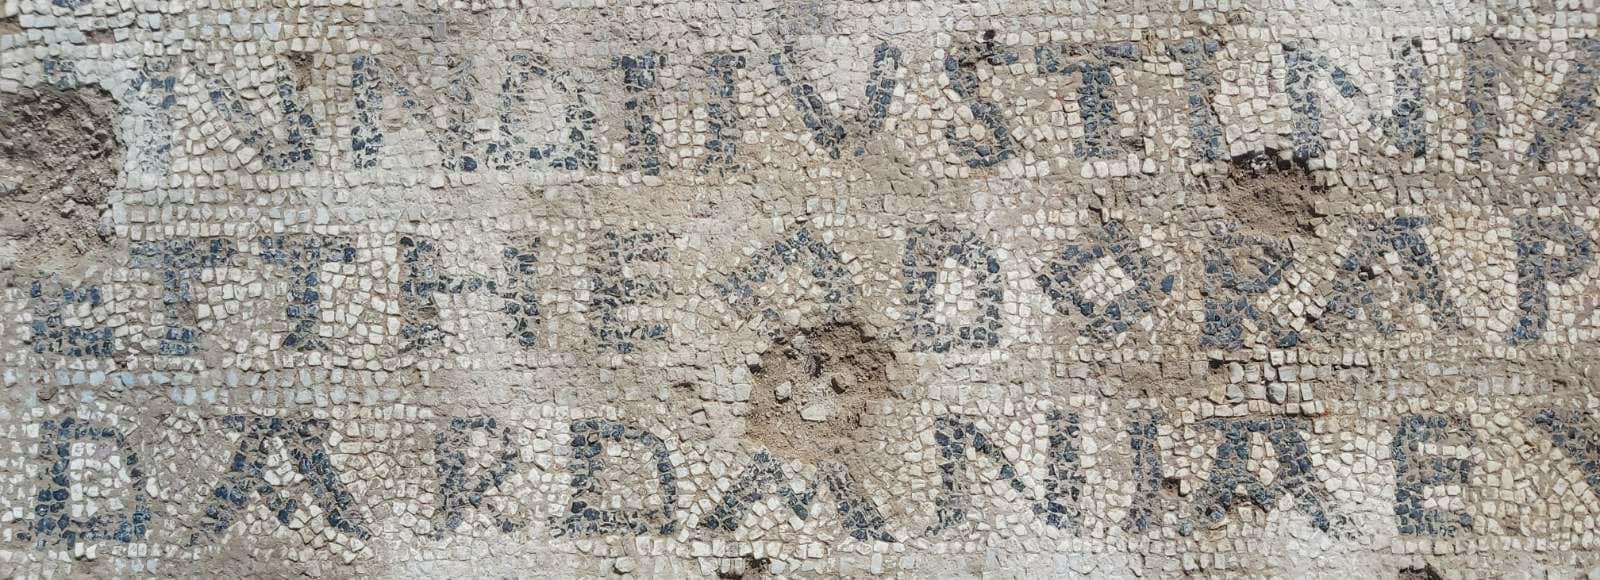 Mbishkrimi i perandorit Justinian, zbulimi më i rëndësishëm në arkeologjinë kosovare